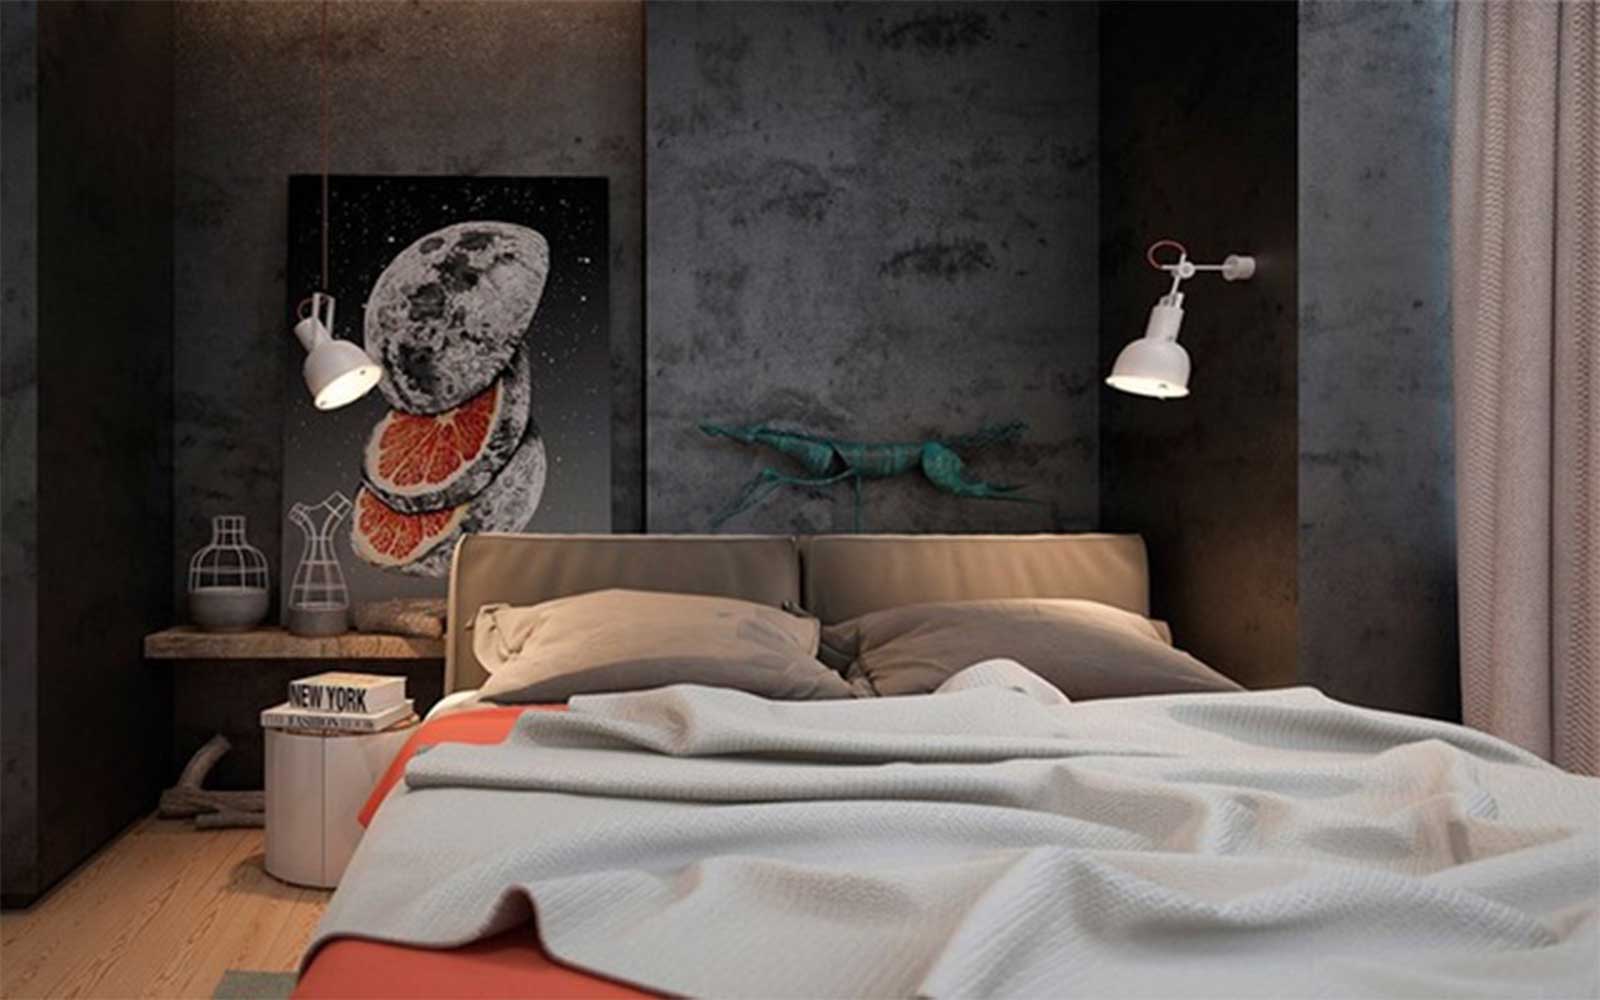 Dành cho những ai thích thiết kế phòng ngủ theo màu gạch ốp này, trông vô cùng ấn tượng và tự nhiên